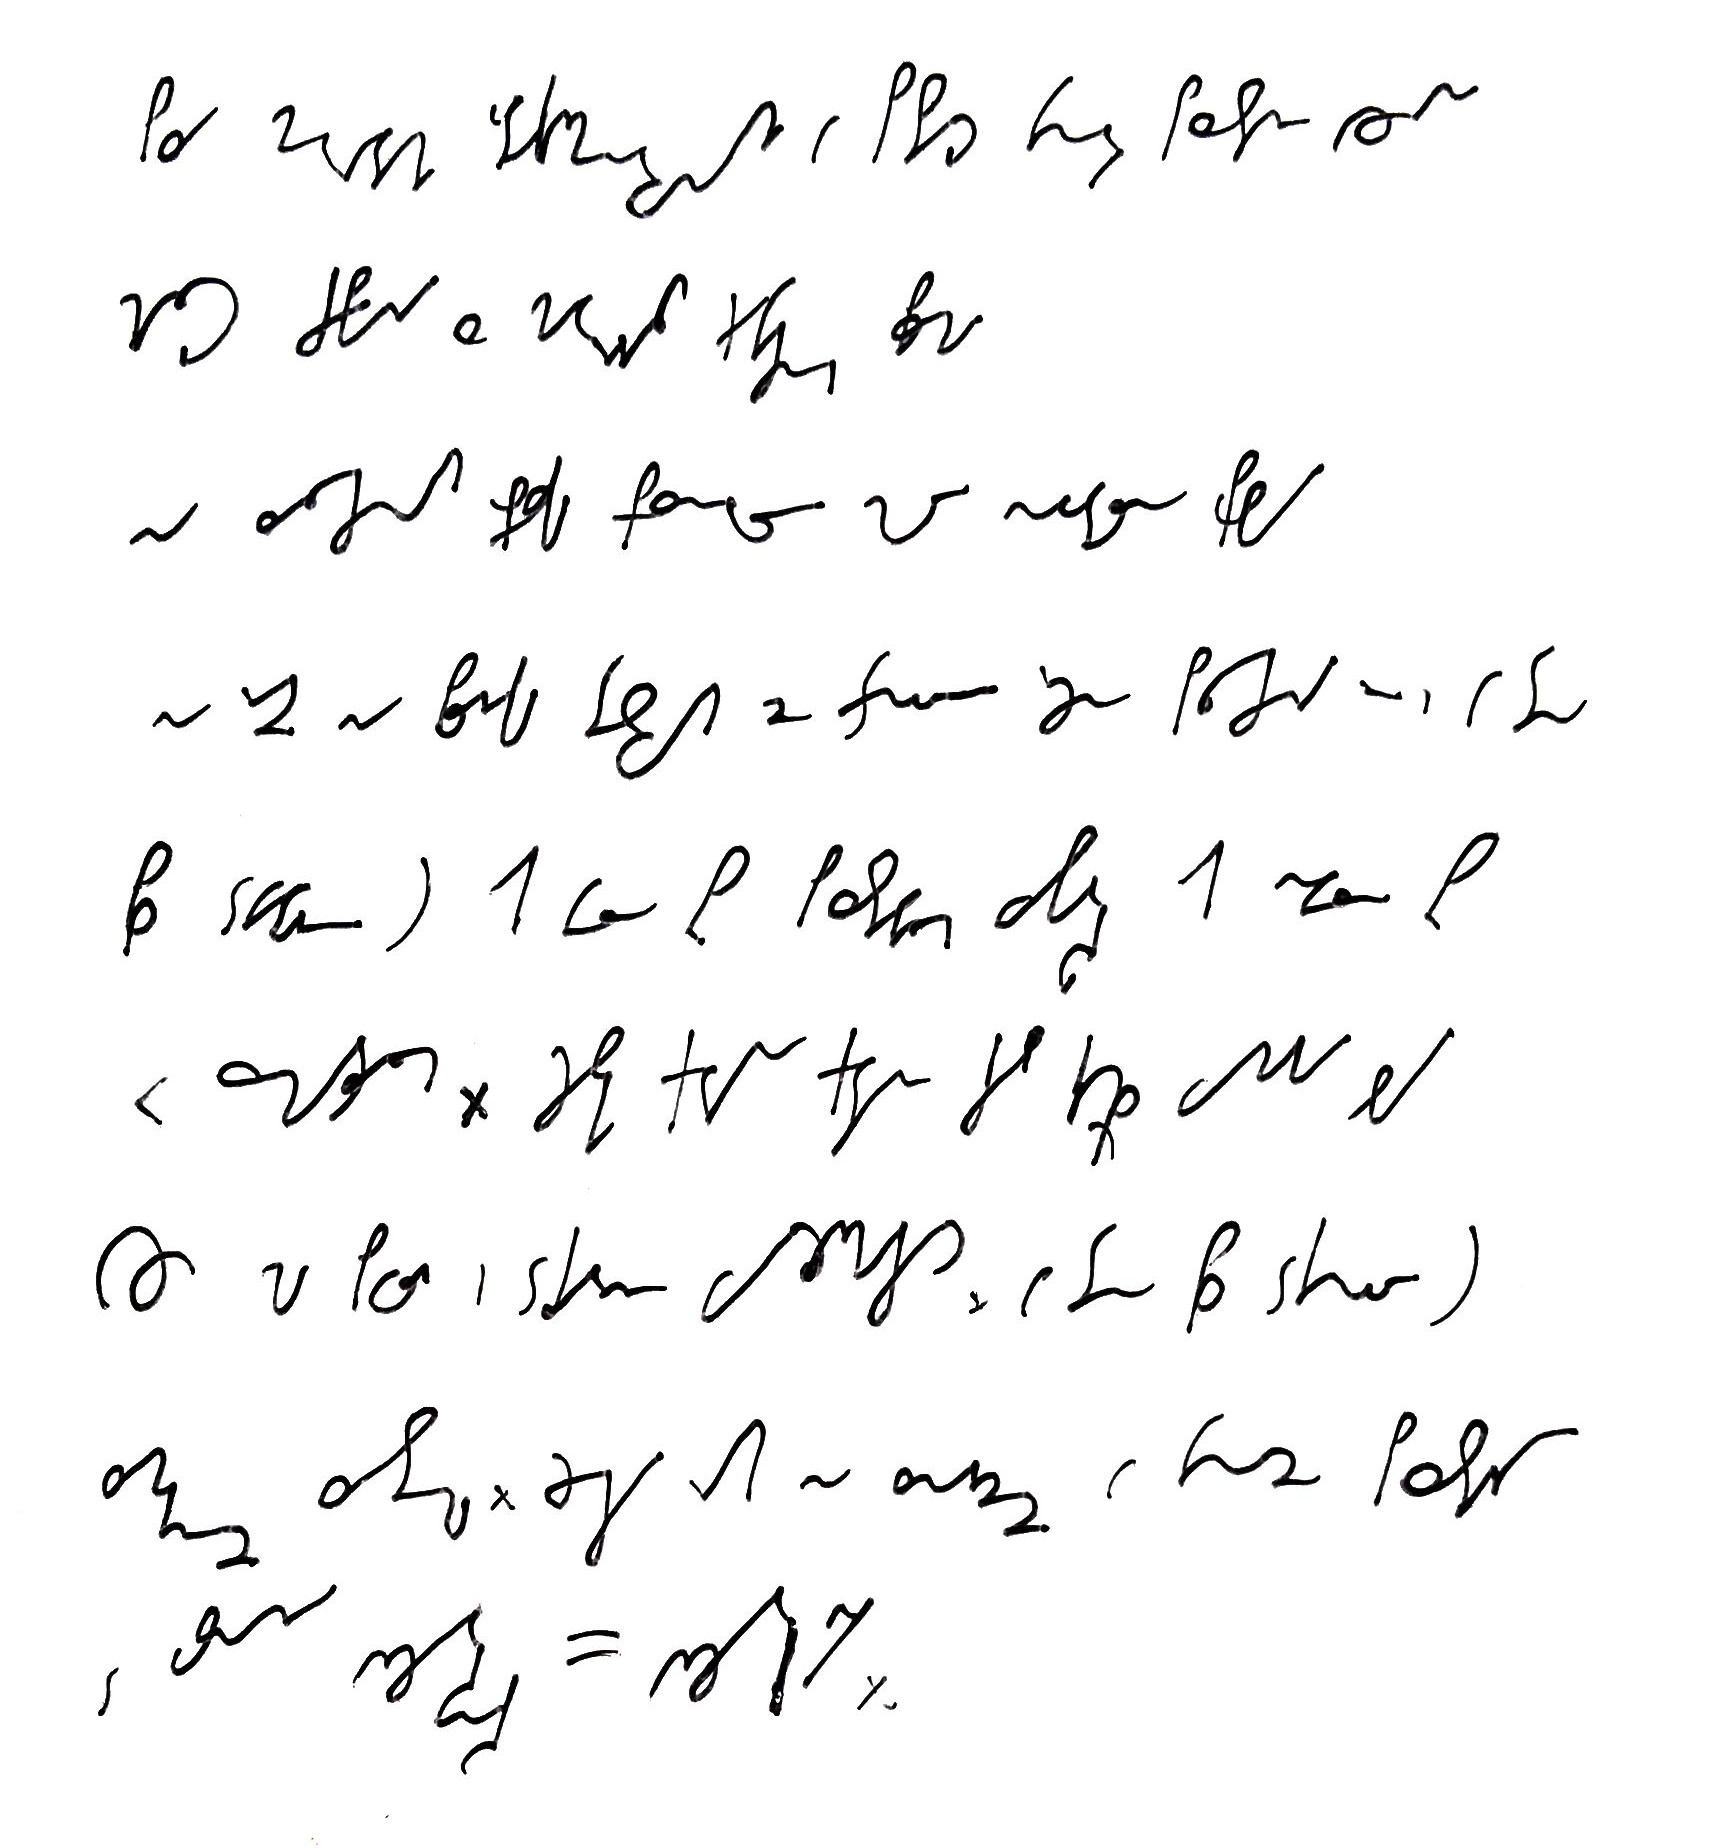 Druga kartka wpisu zapisana pismem stenograficznym, tłumaczenie w tekście wpisu